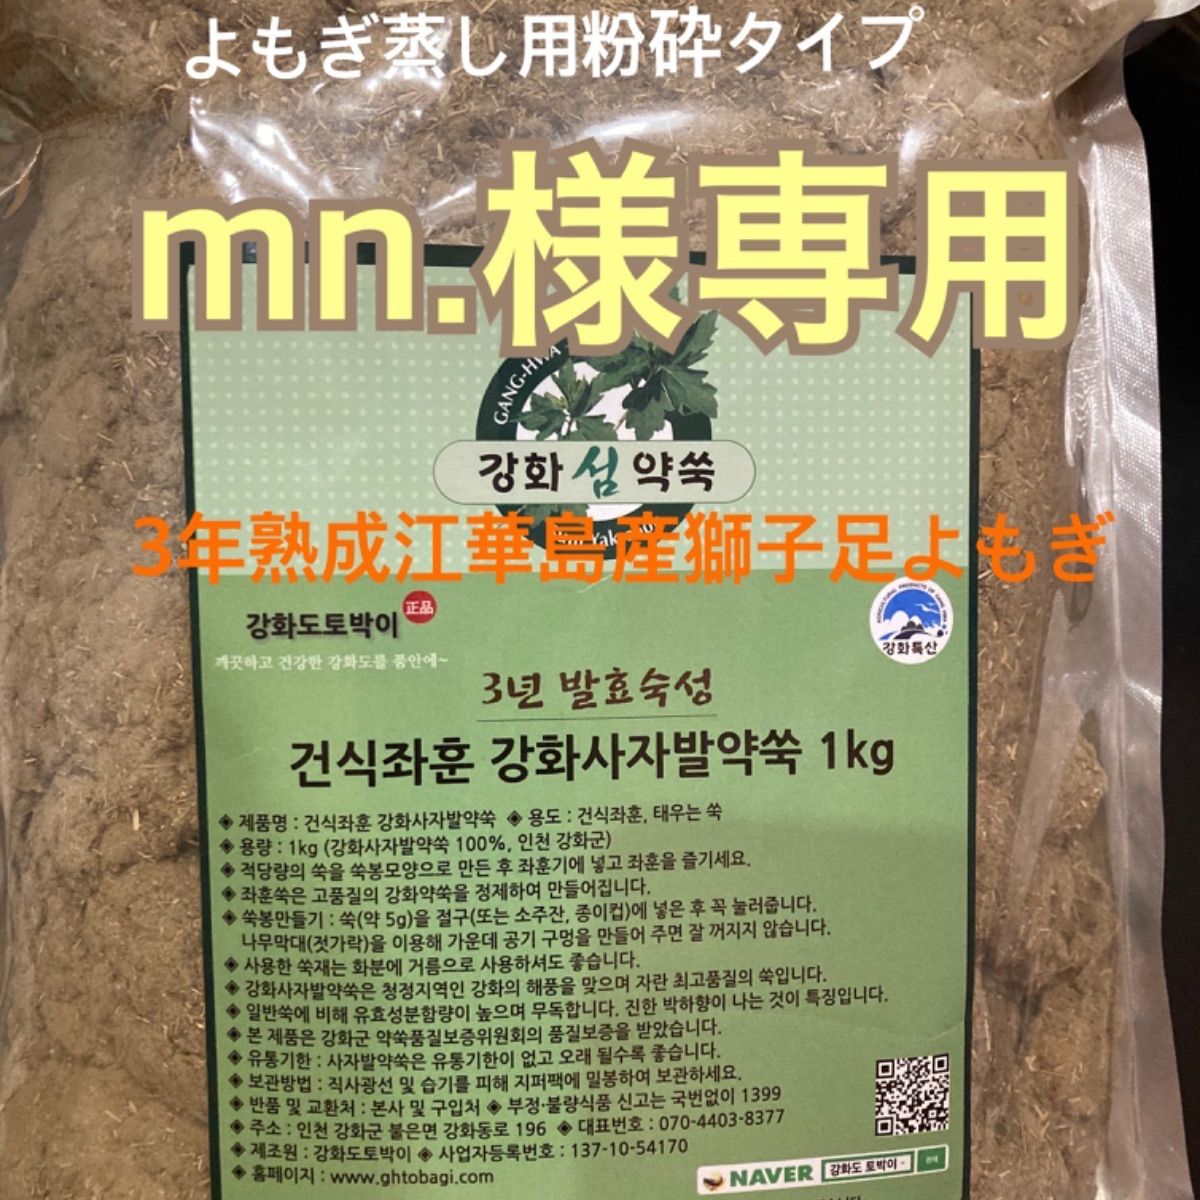 韓国江華島産の3年熟成獅子足(サジャバル)よもぎ100% 粉砕タイプ1キロ 